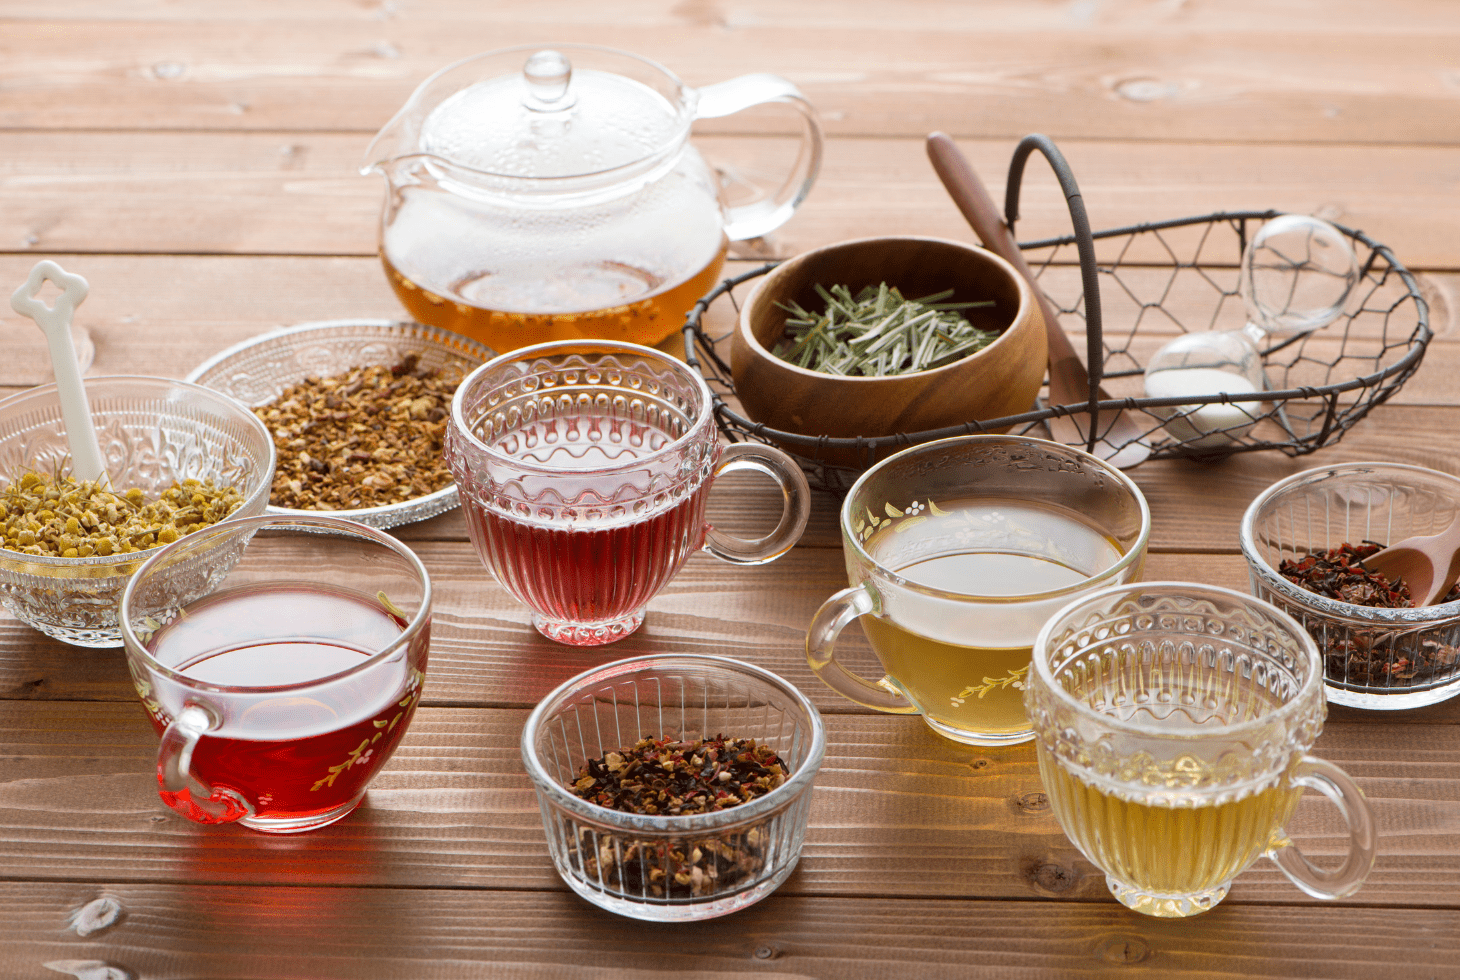 trà tốt cho người cao huyết áp trà thảo dược giúp hạ huyết áp các loại trà tốt cho người cao huyết áp trà thảo dược giúp ổn định huyết áp